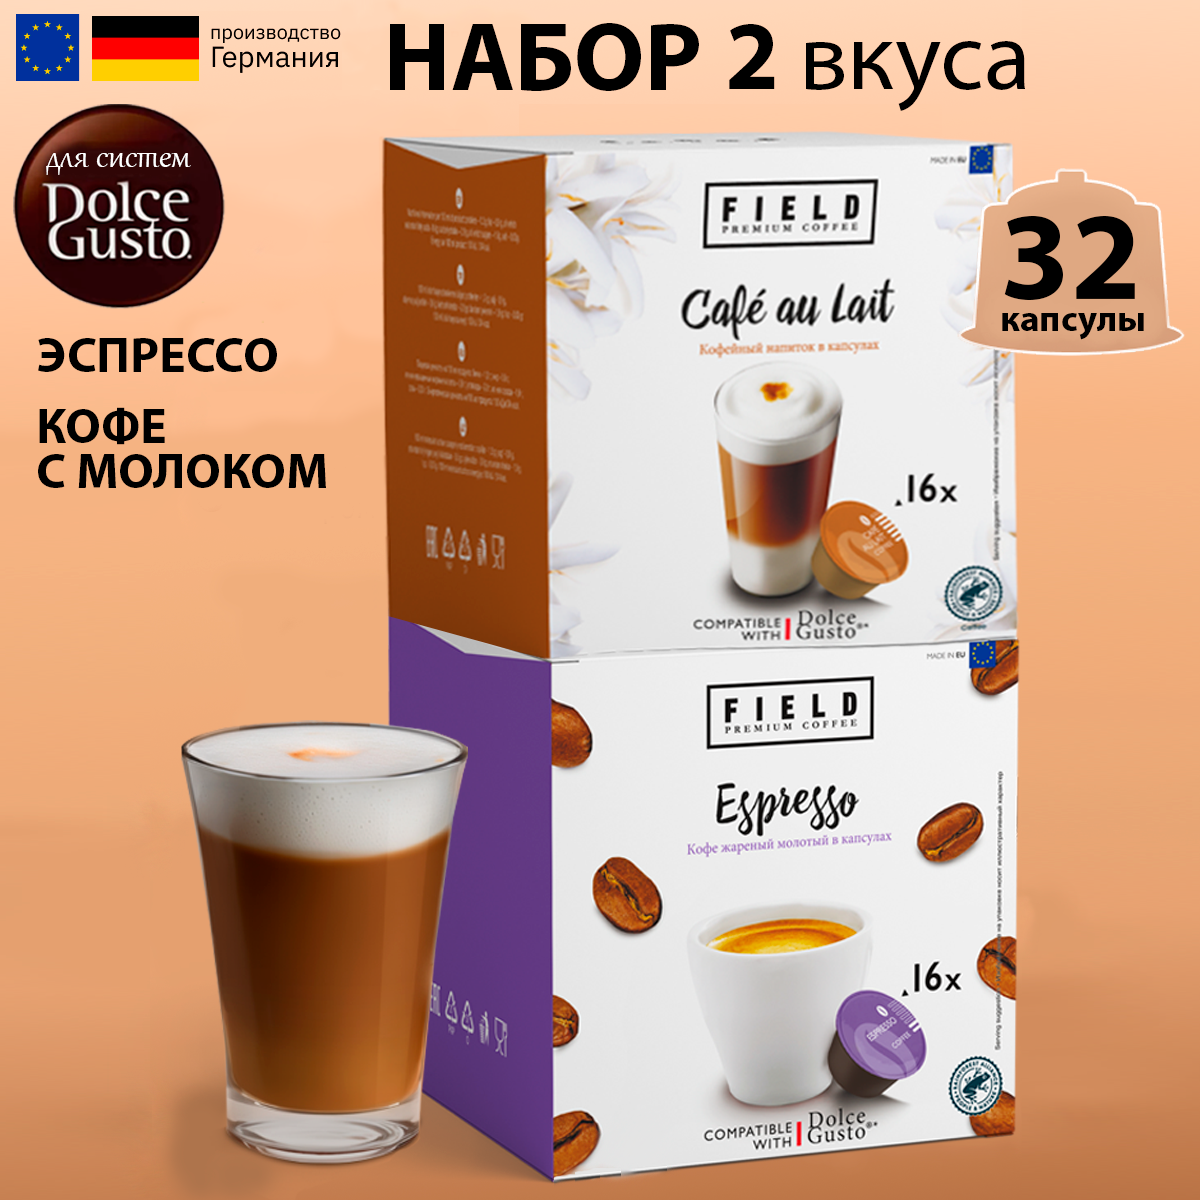 Капсулы кофе Dolce Gusto 32 шт для кофемашины Дольче Густо "FIELD" Сafe au lait Эспрессо